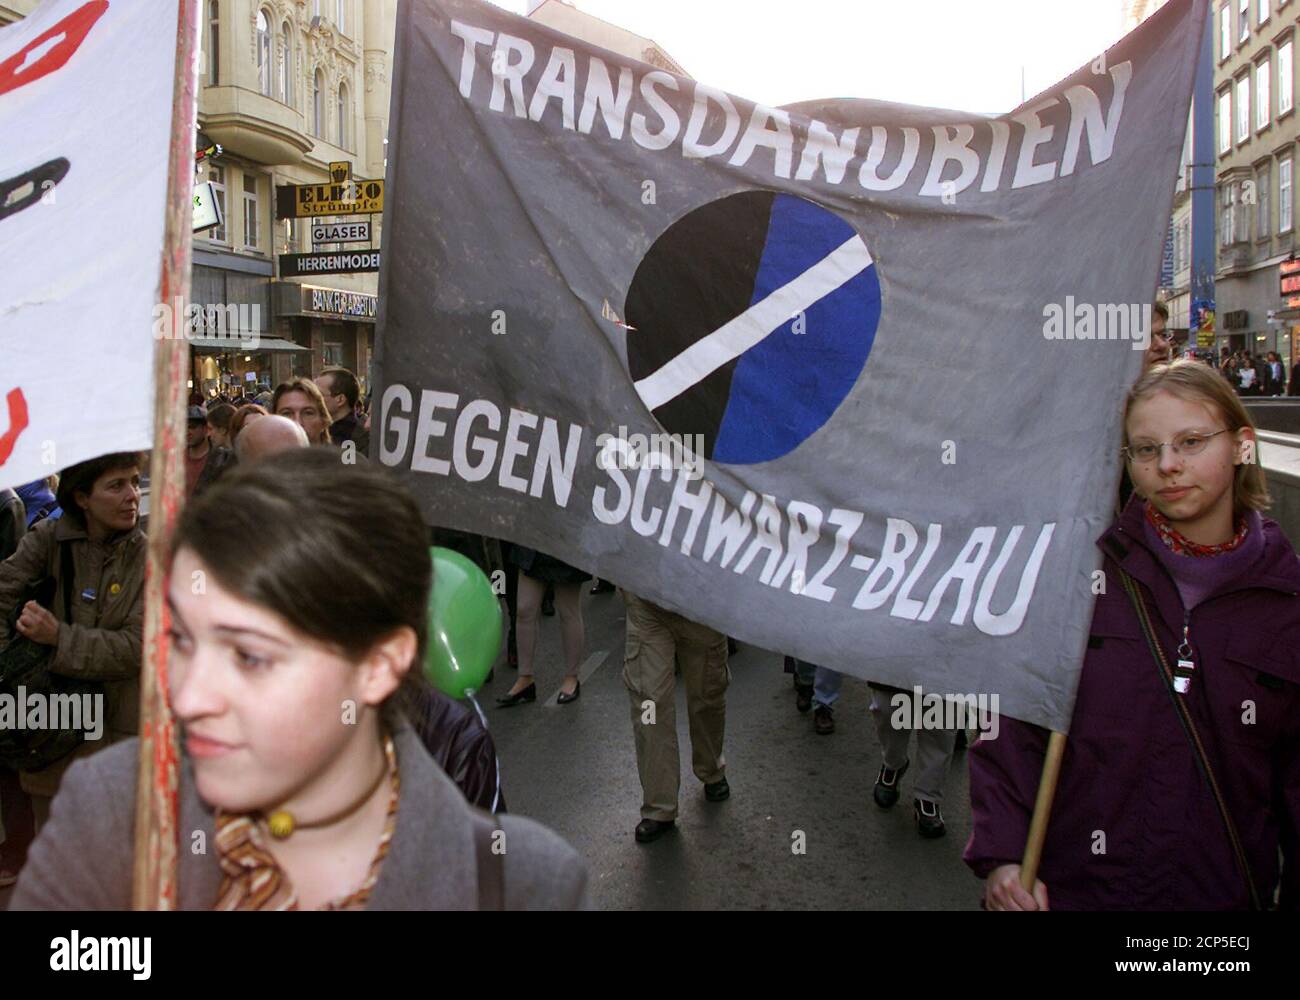 Am 2. Februar 2002, dem zweiten Jahrestag der Angelobung der Bundesregierung, beteiligten sich in Wien ca. 2000 Personen an einer Demonstration gegen die FPOe-OeVP-Regierung. Mit Pfiffen und Trommeln wurde die Koalition kritisiert, die Kundgebung verlief friedlich. REUTERS/Herwig Prammer REUTERS  PR/ Stock Photo